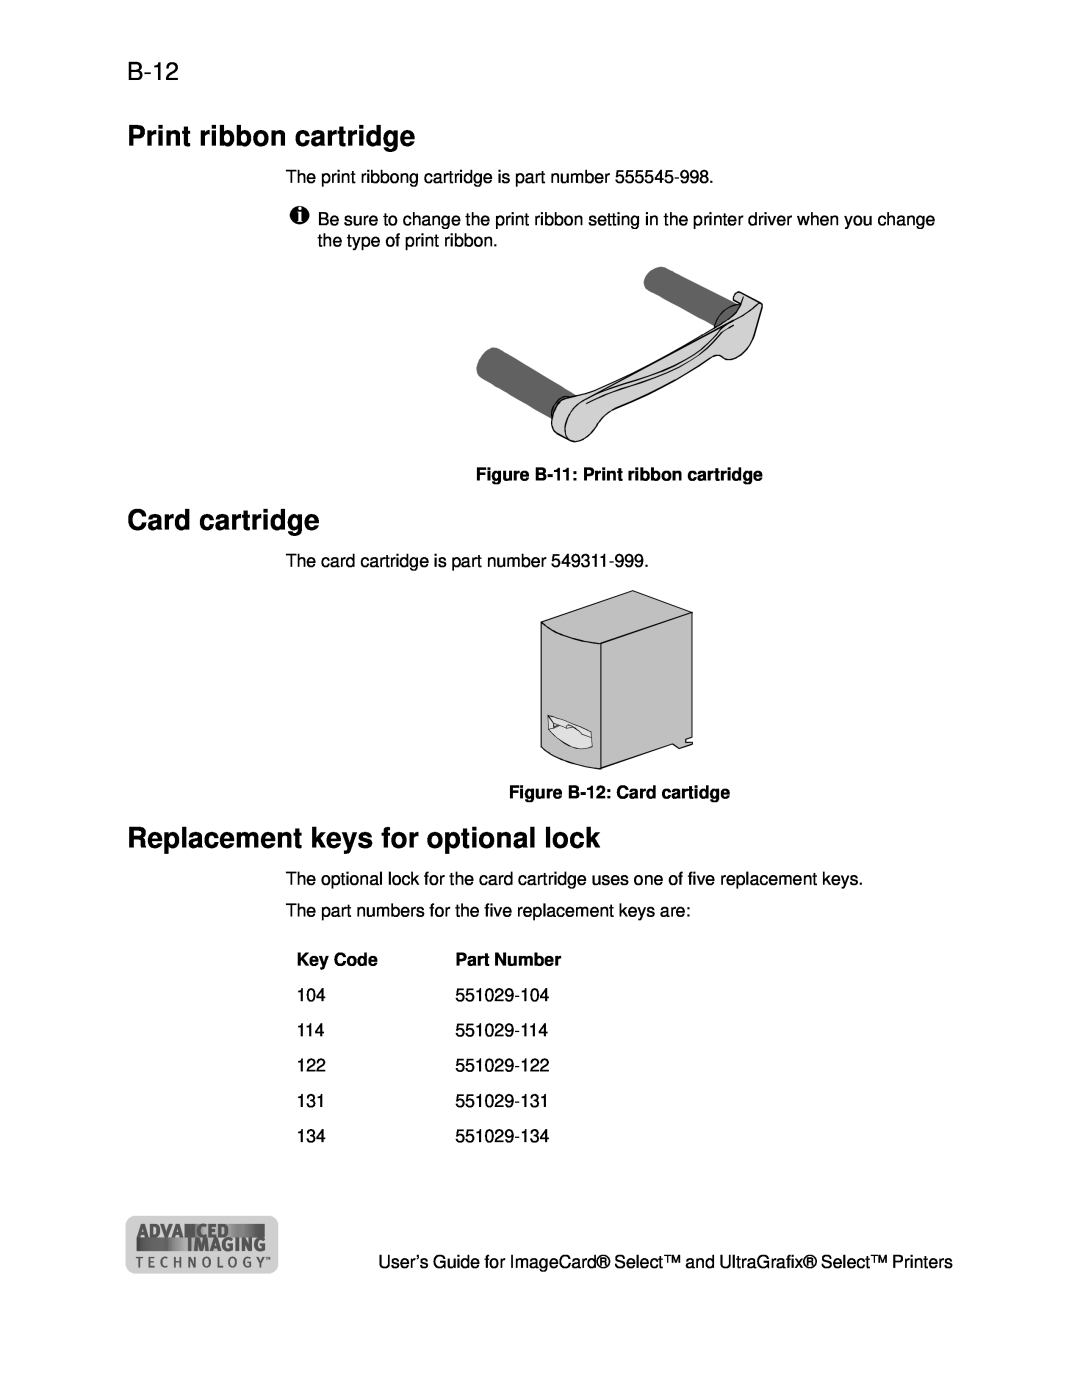 Datacard Group ImageCard SelectTM and UltraGrafix SelectTM Printers Print ribbon cartridge, Card cartridge, B-12, Key Code 